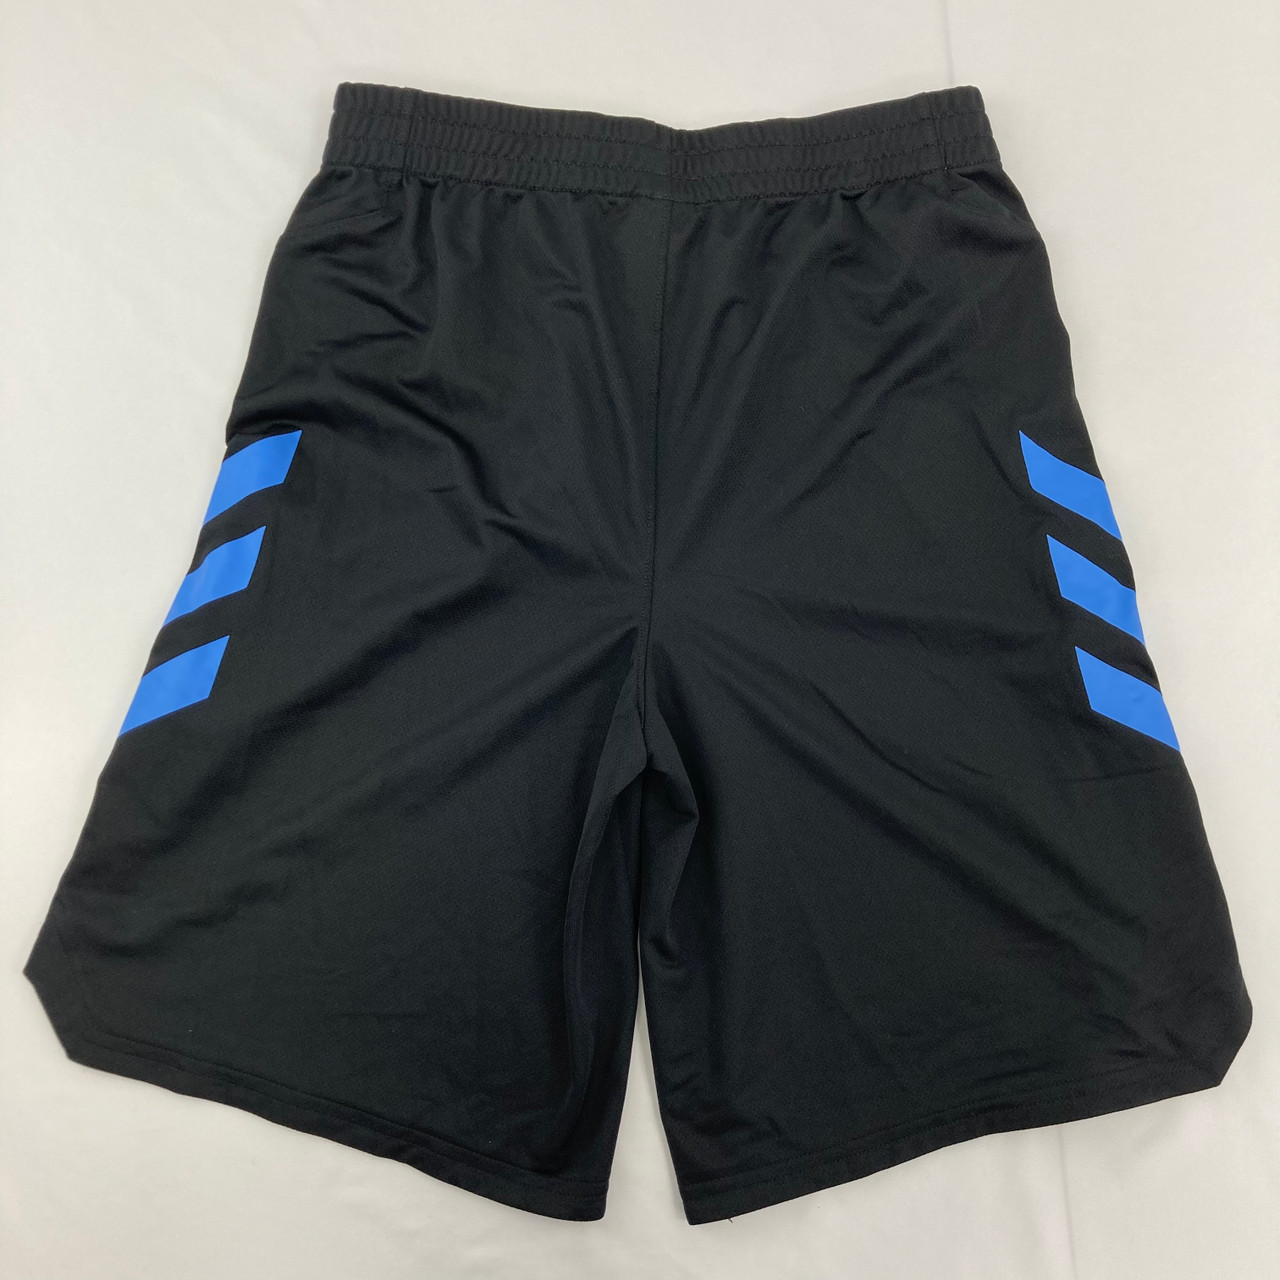 Blue Side Stripe Athletic Shorts 18/20 yr